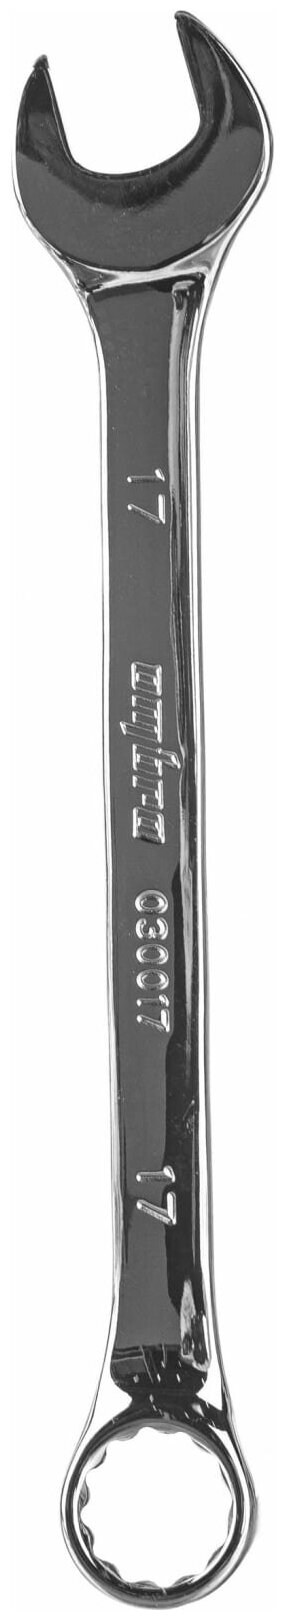 Комбинированный ключ Ombra - фото №10